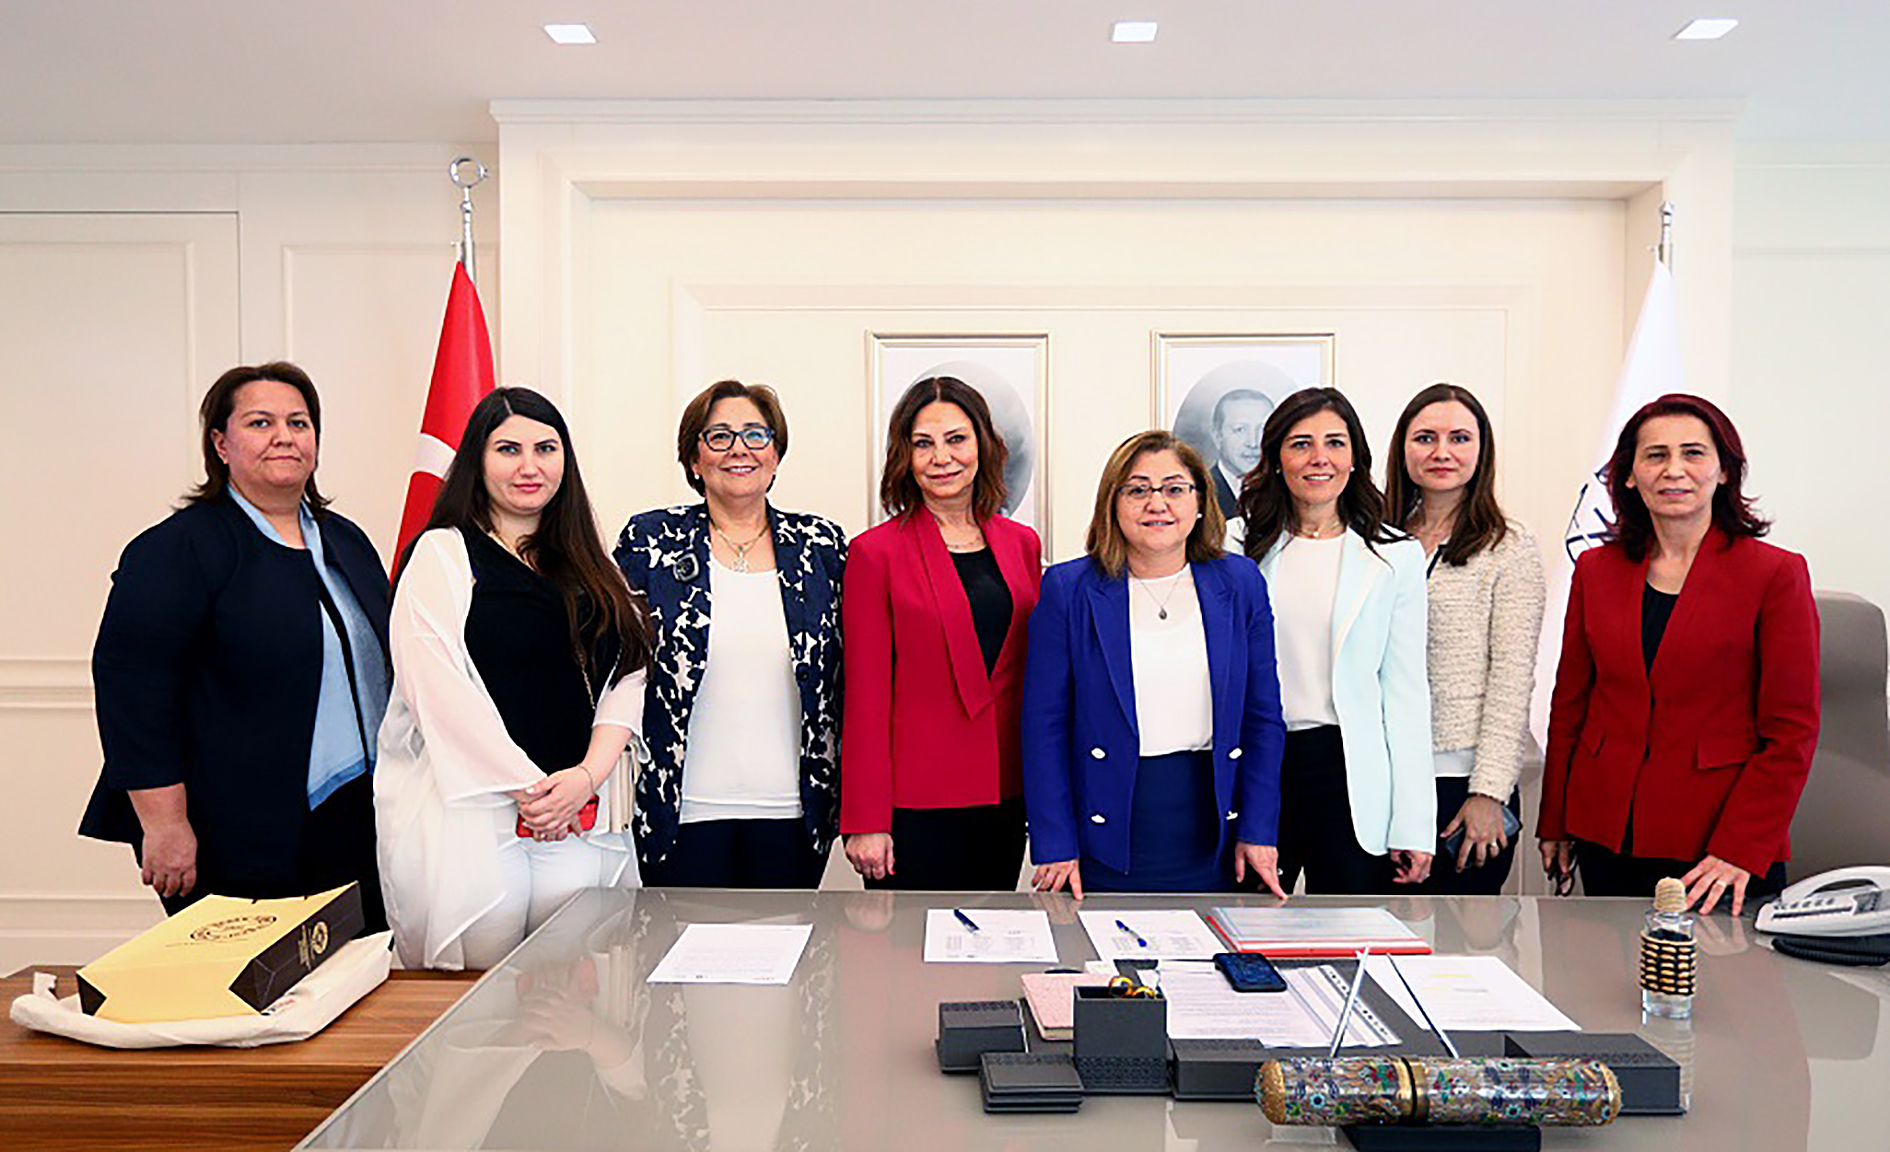 TBB Başkanı Fatma Şahin, Kadın Adayları Destekleme Derneği ile görüştü